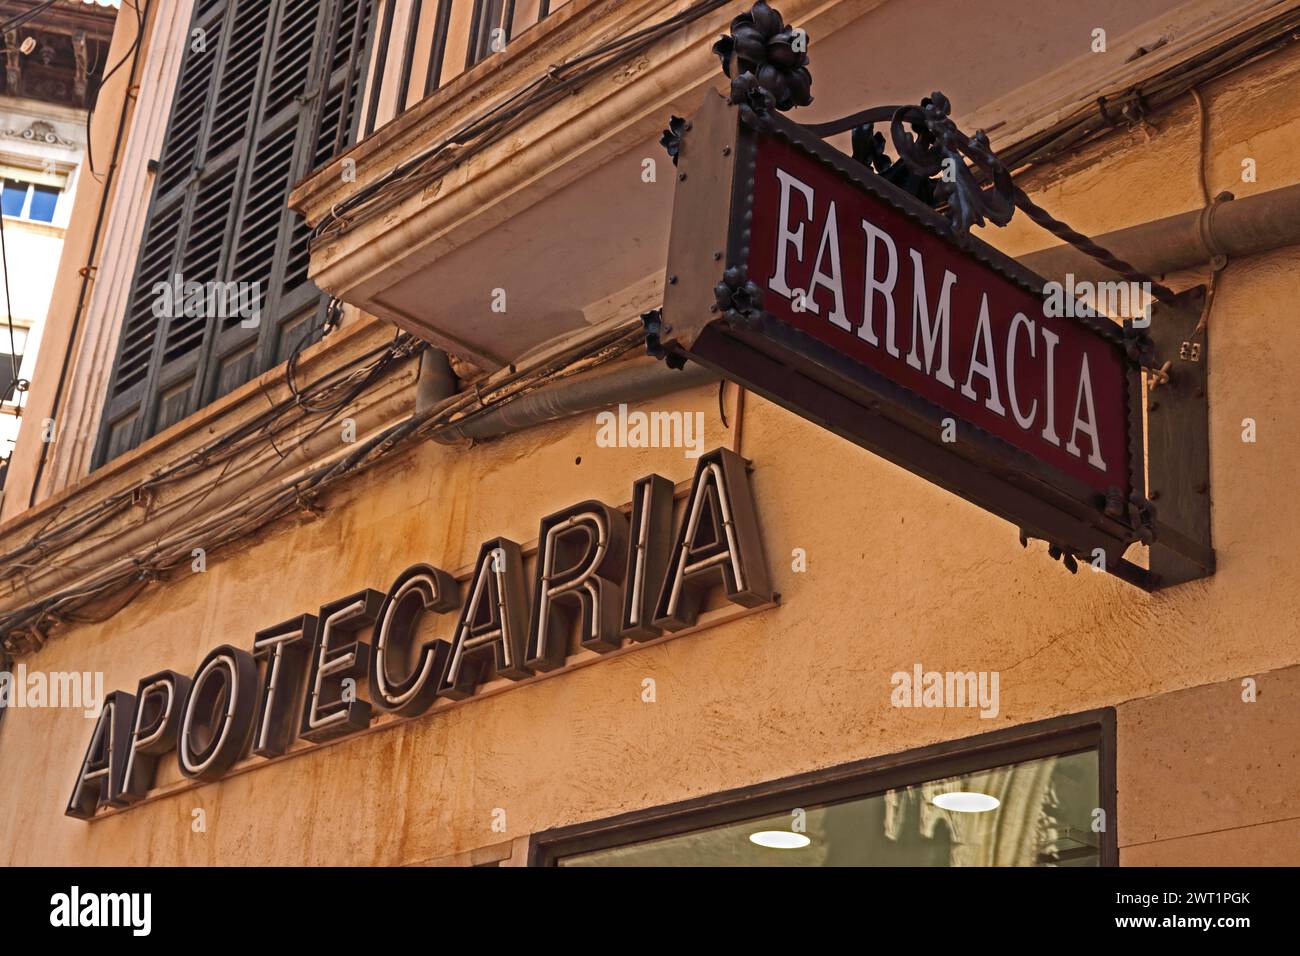 Old fashioned Apotecaria and Farmacia signs, Palma Stock Photo